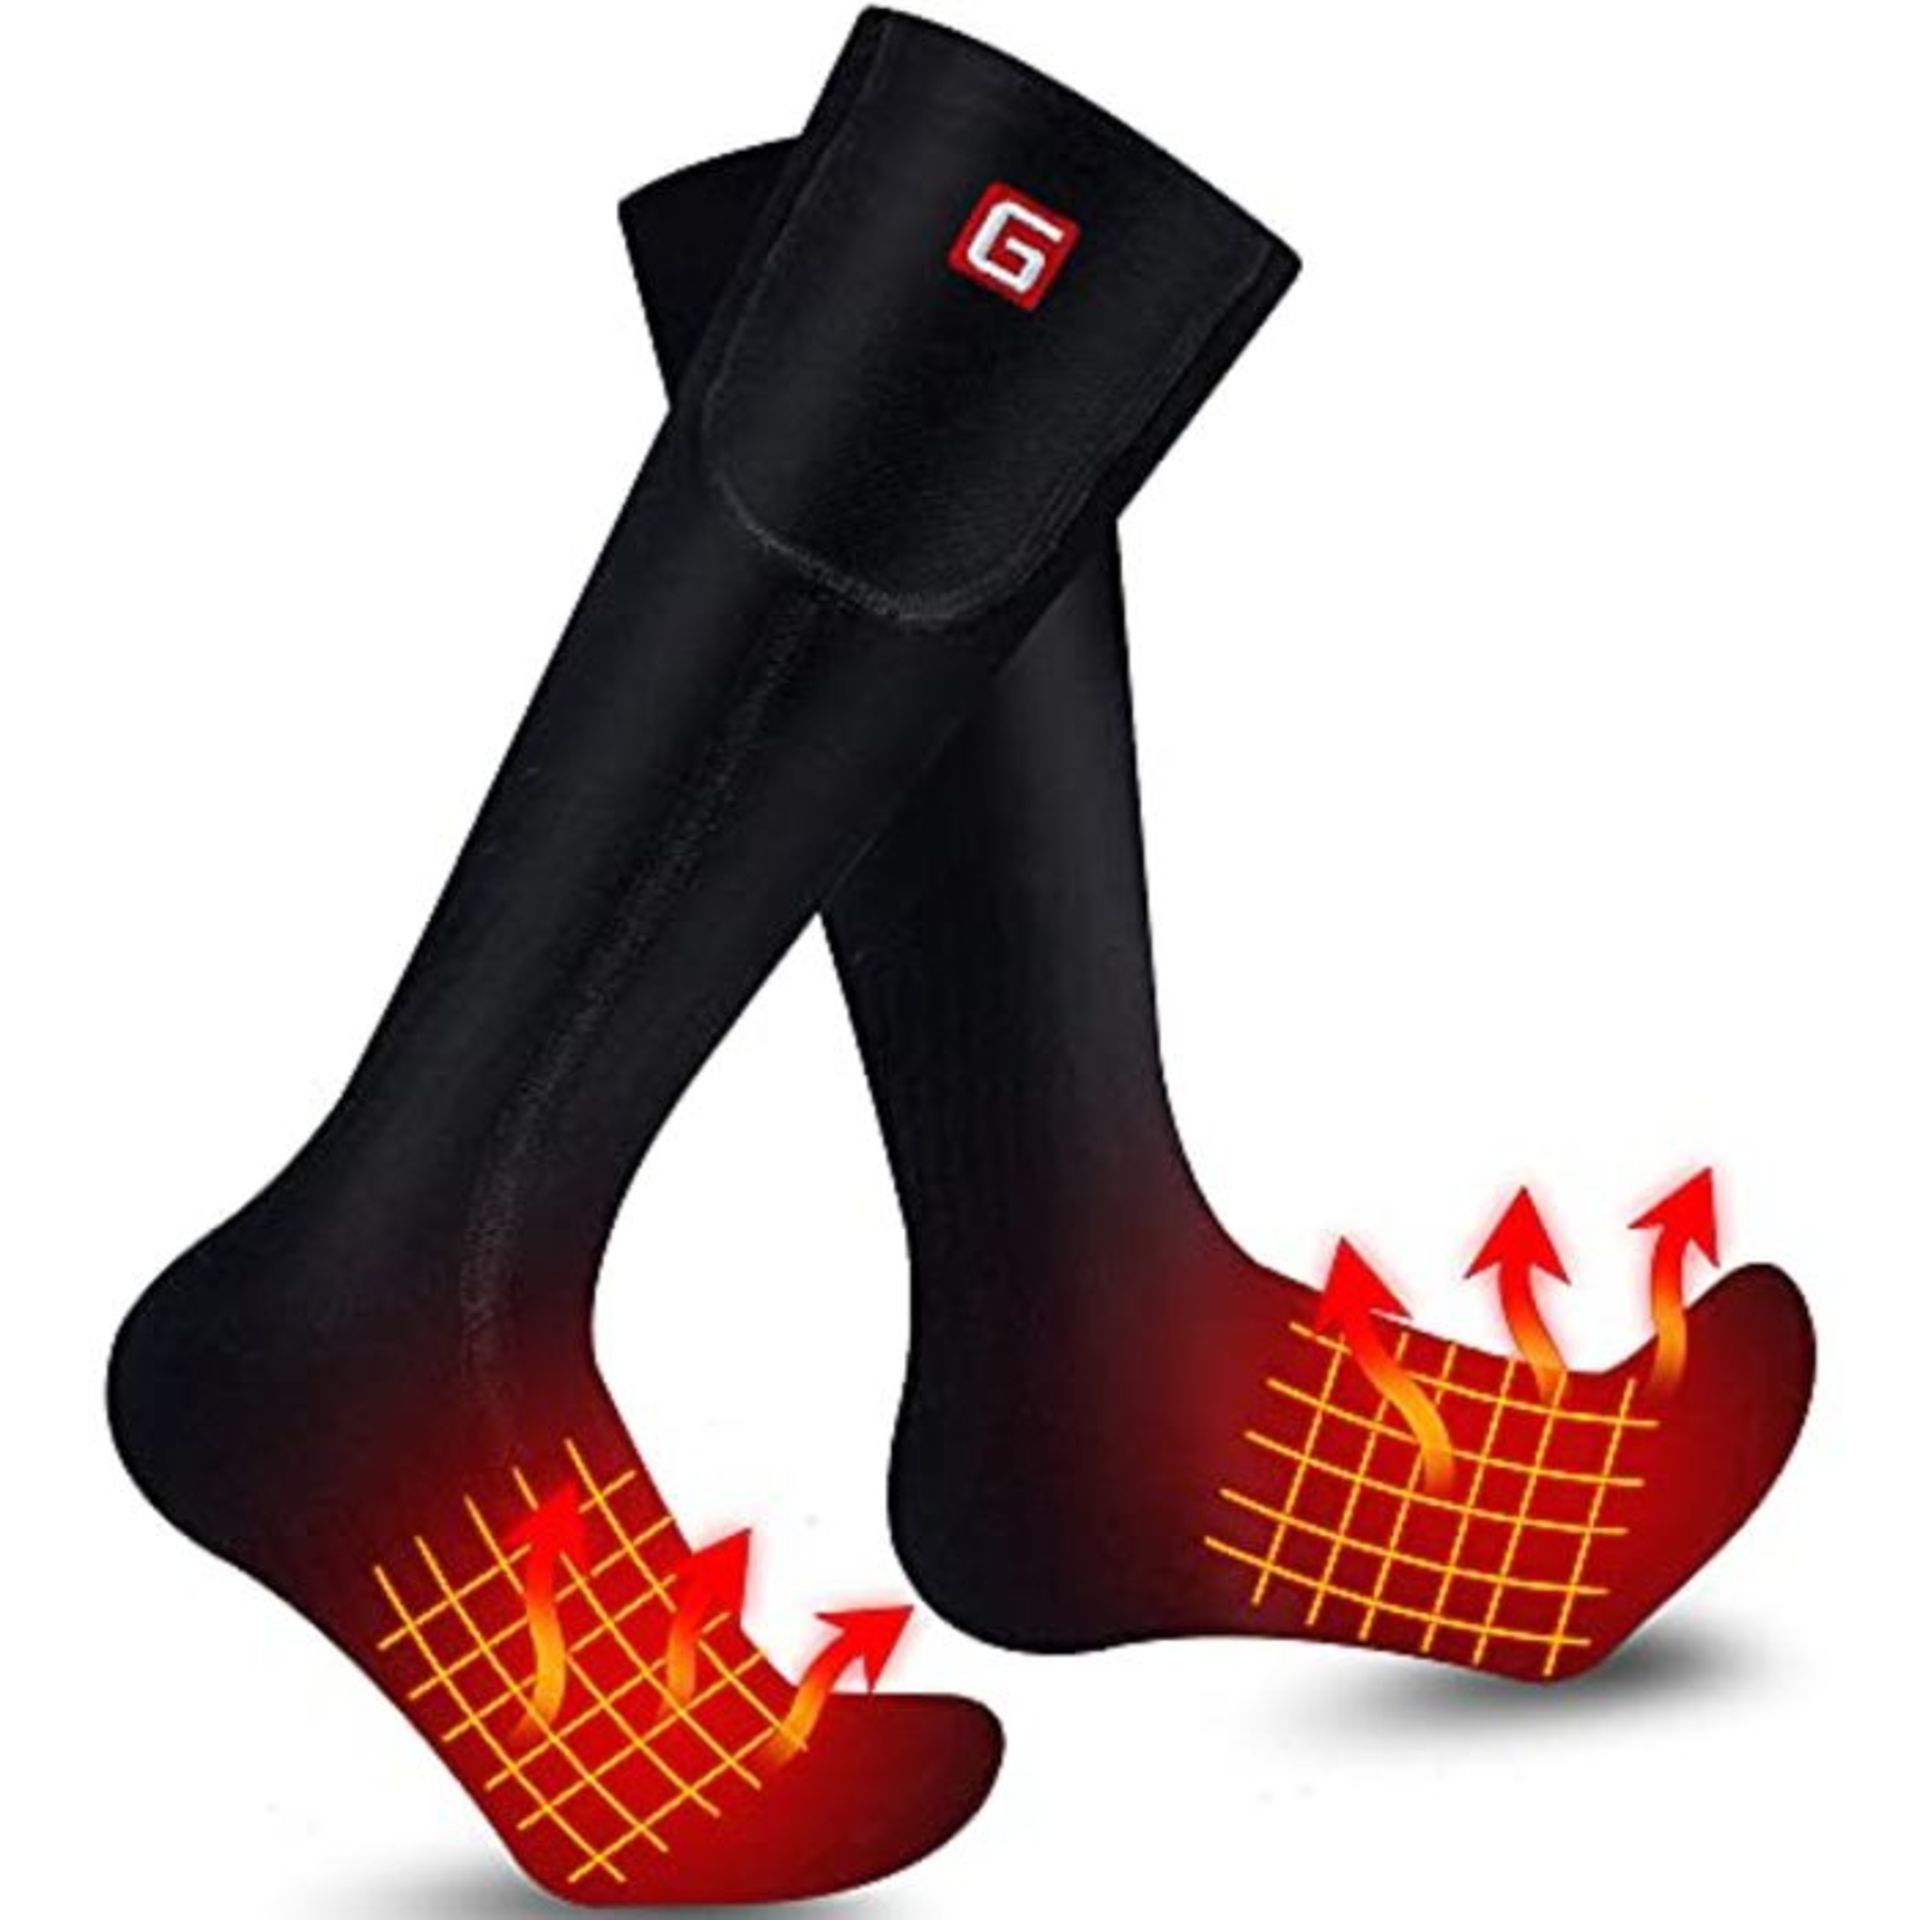 Svpro Batterie beheizte Socken MÃ¤nner Frauen wiederaufladbare elektrische Socken, W